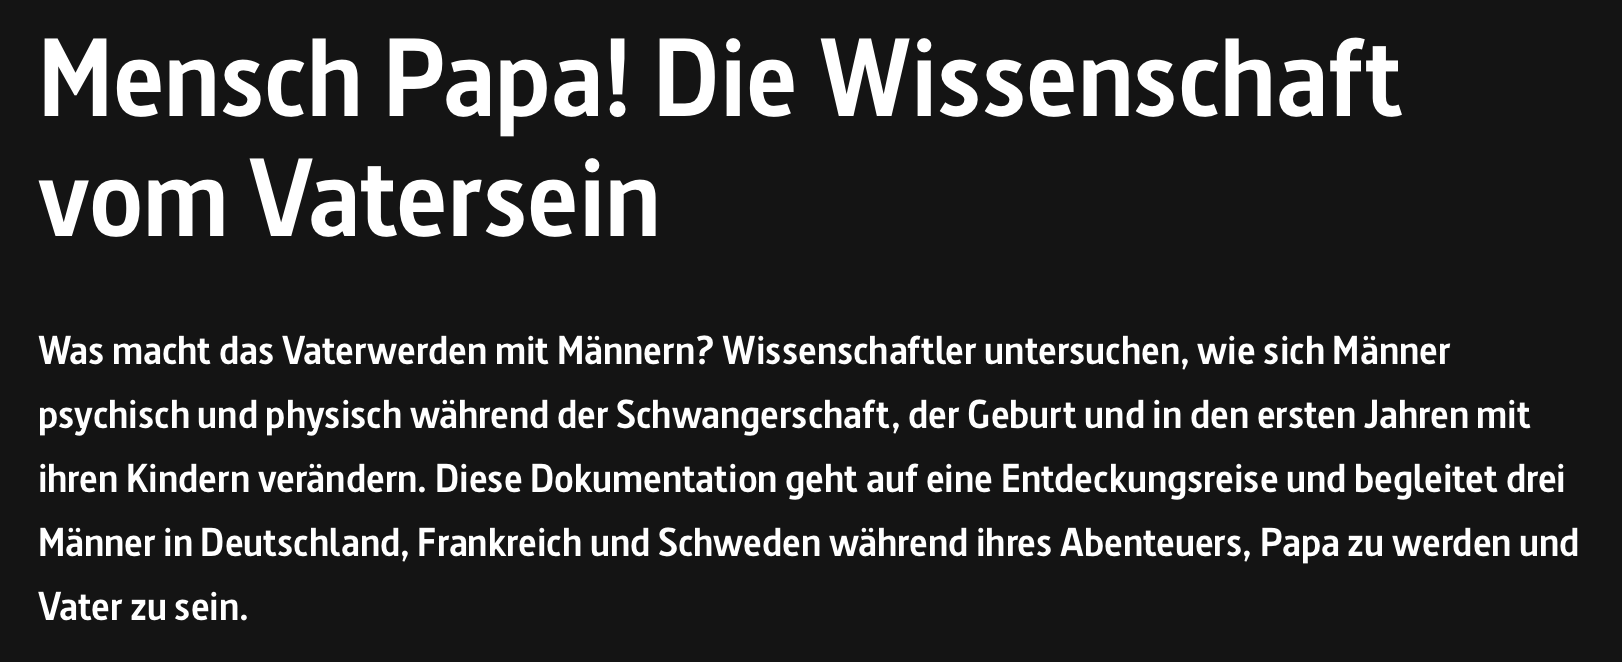 You are currently viewing Arte-Programmtip: Mensch Papa! Die Wissenschaft vom VaterseinArte-Programmtip: 